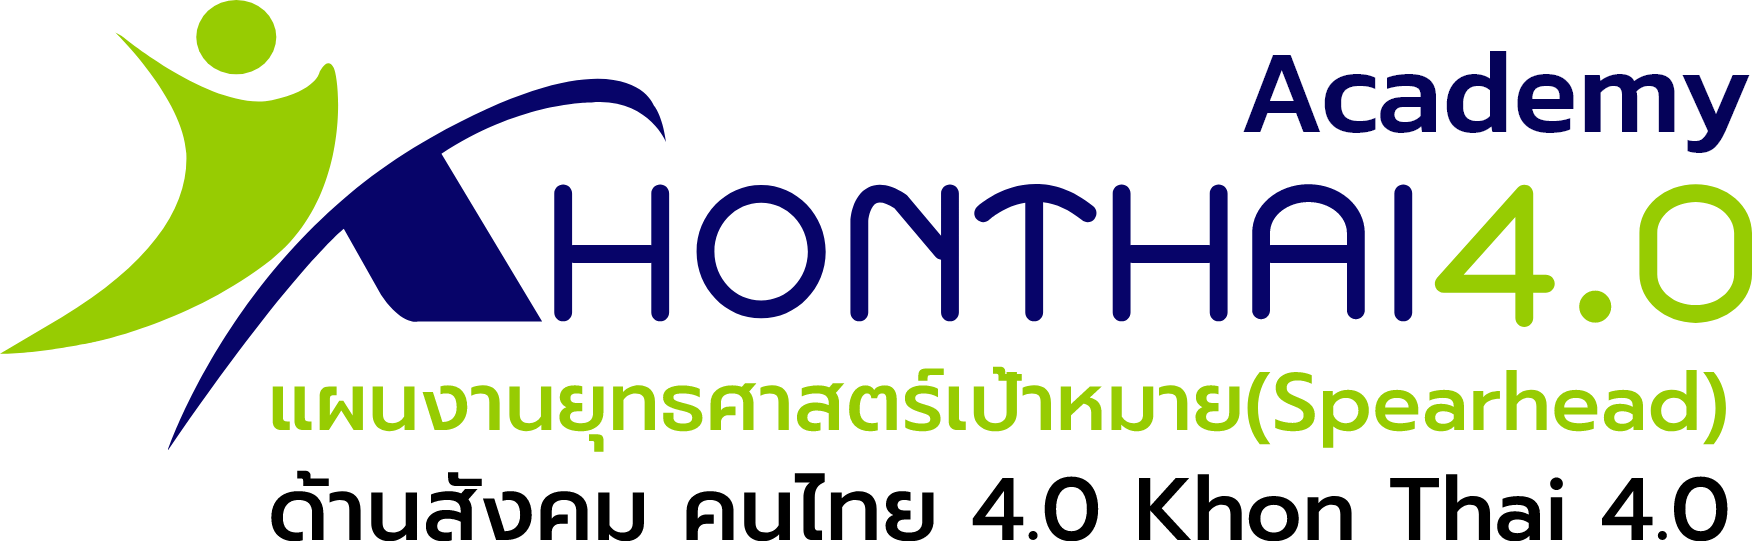 konthai4.0 logo